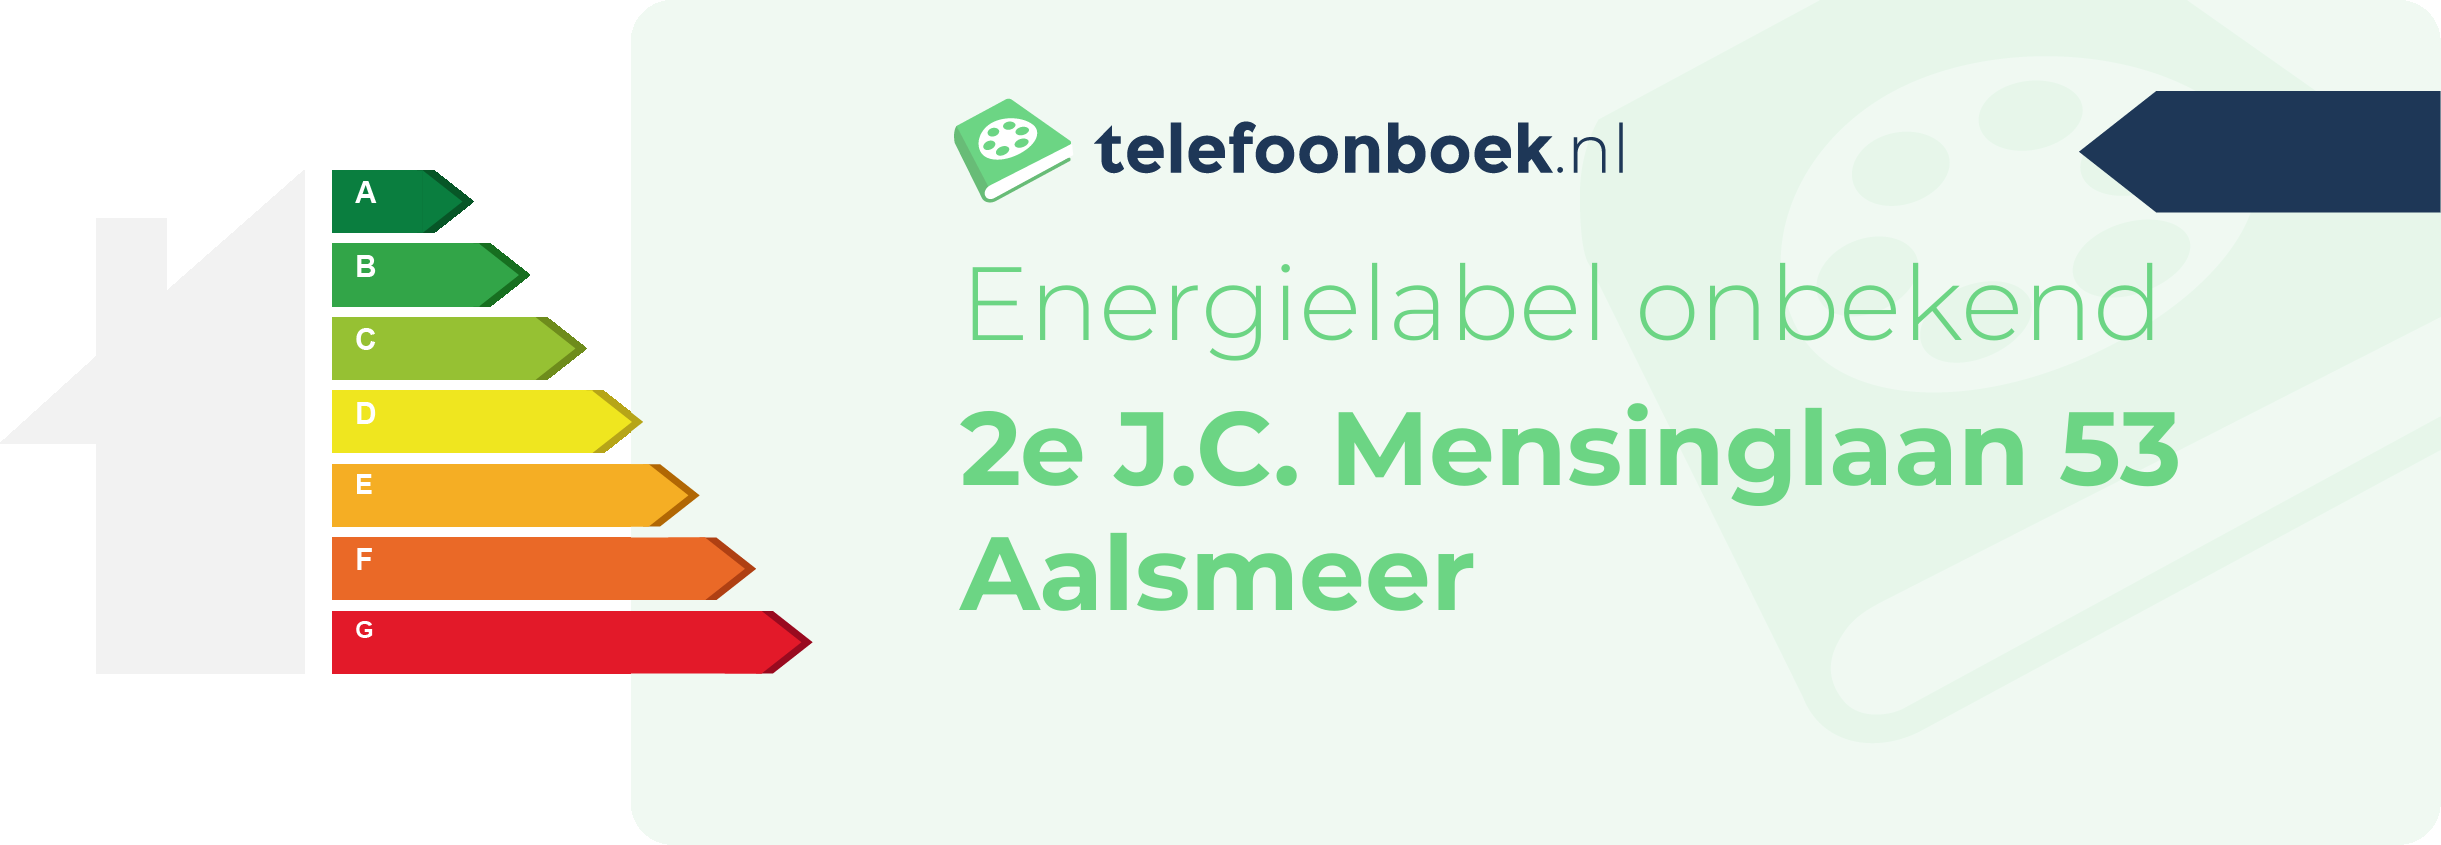 Energielabel 2e J.C. Mensinglaan 53 Aalsmeer